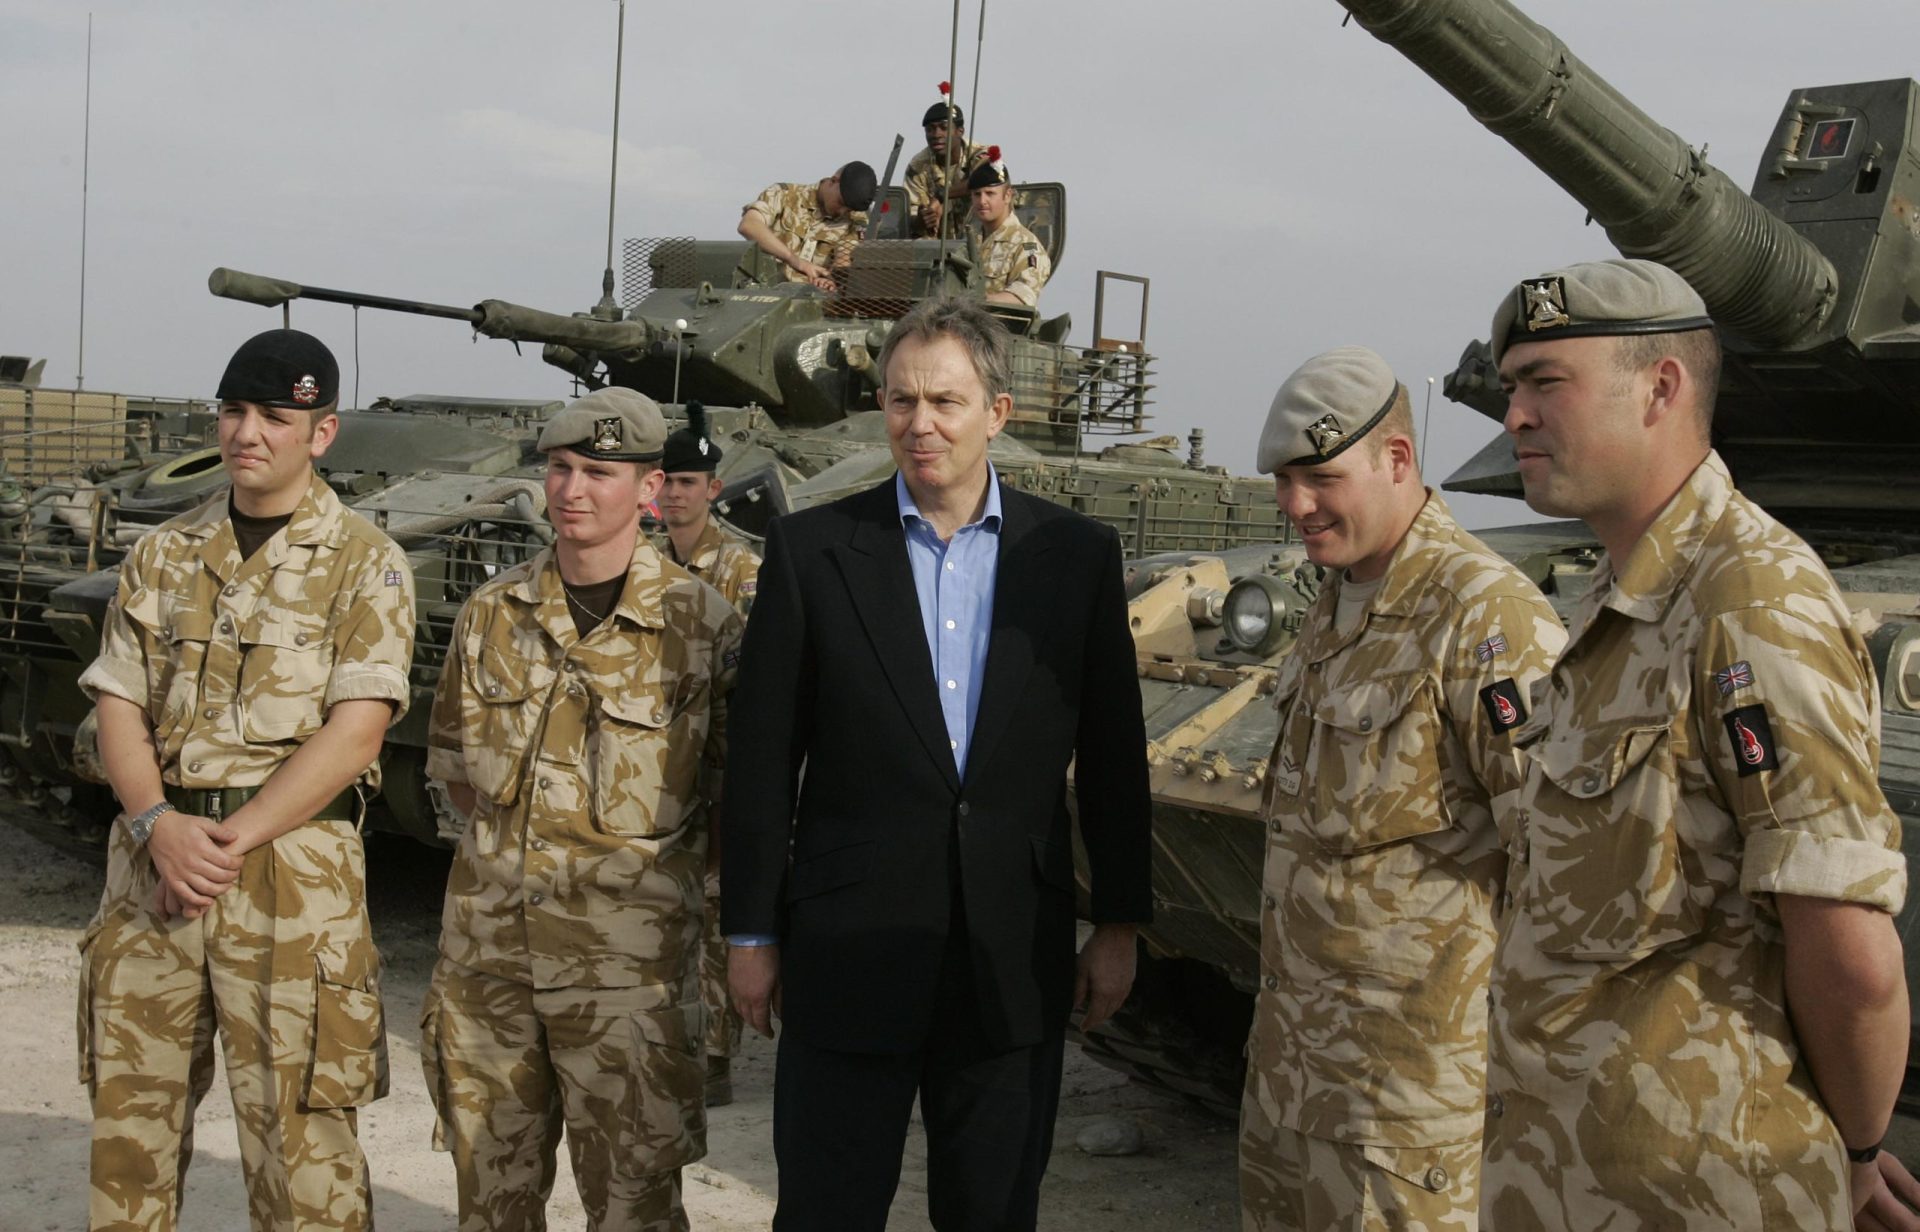 Blair arrasado em relatório britânico sobre Guerra do Iraque